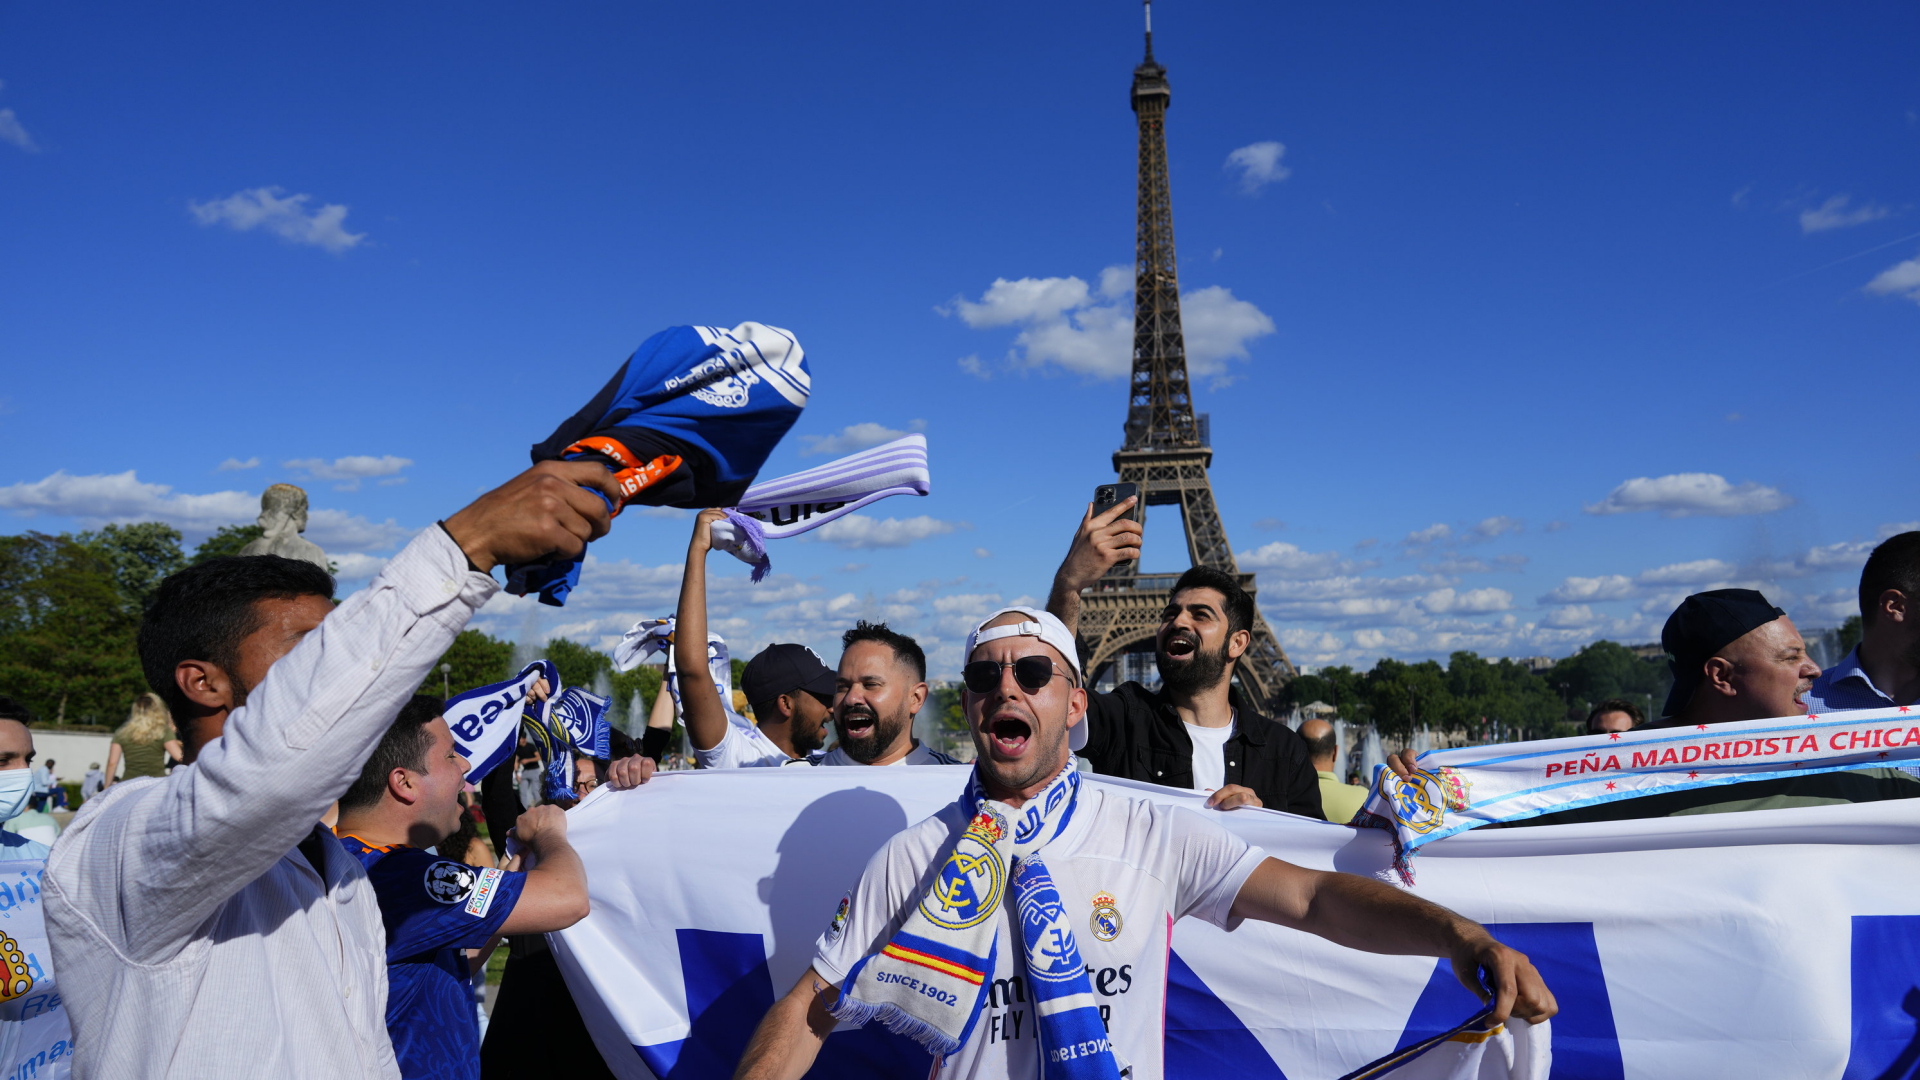 Fans des Fußballvereins Real Madrid feiern vor dem Eiffelturm | AP